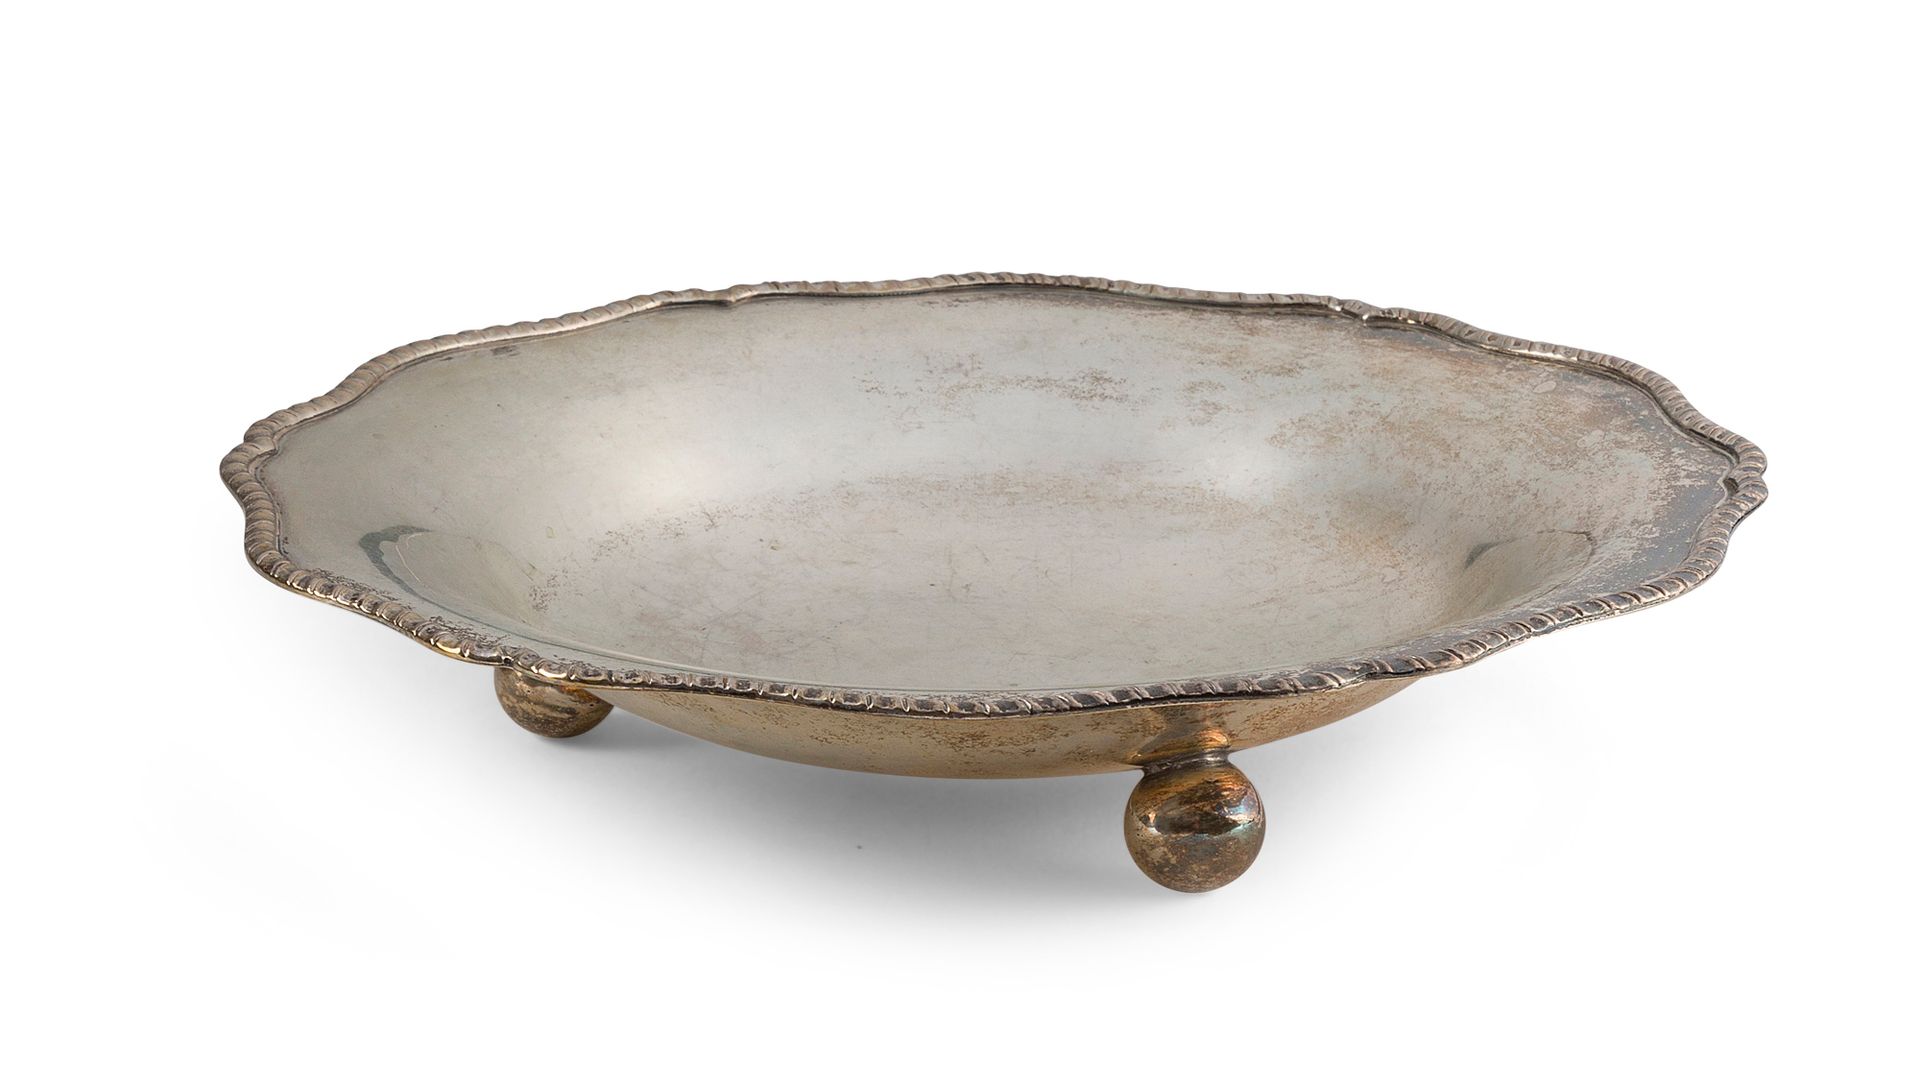 Null 多裂纹碗，置于三个球脚和一个小盘子上，银制（800年），边缘扭曲。

国外工作

直径24和17.5厘米

重量446克